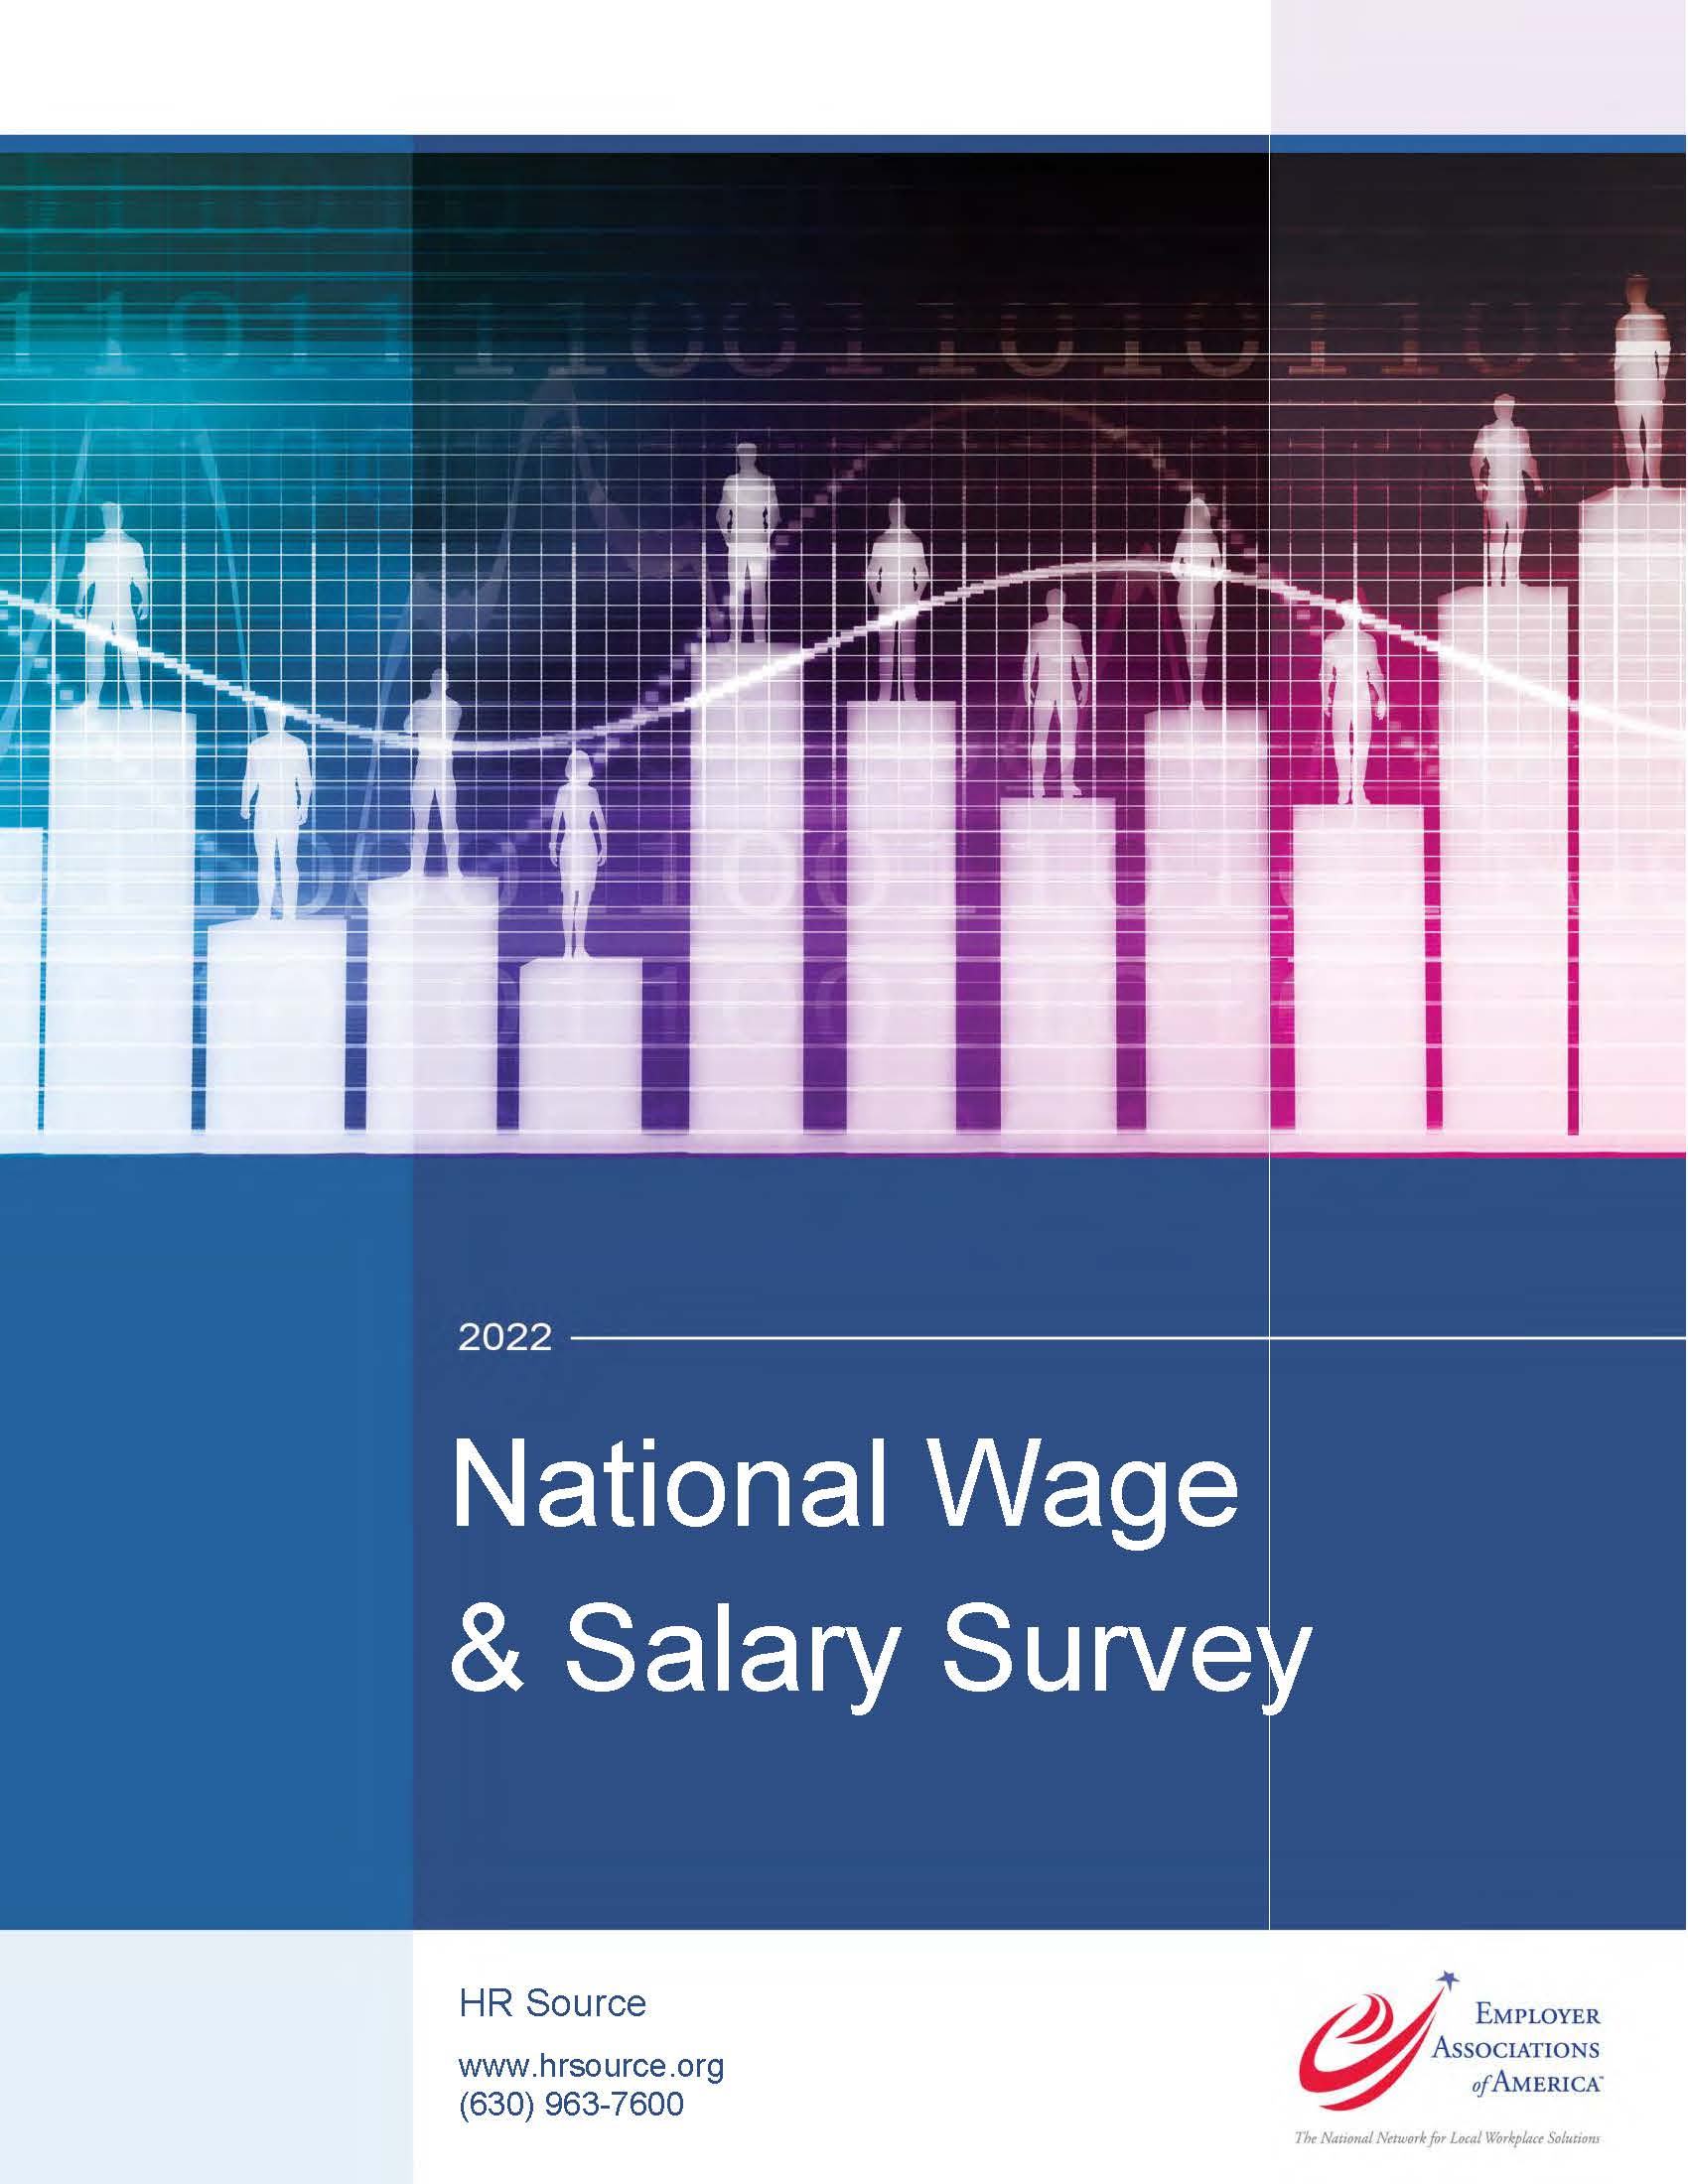 National Wage & Salary Survey 2022